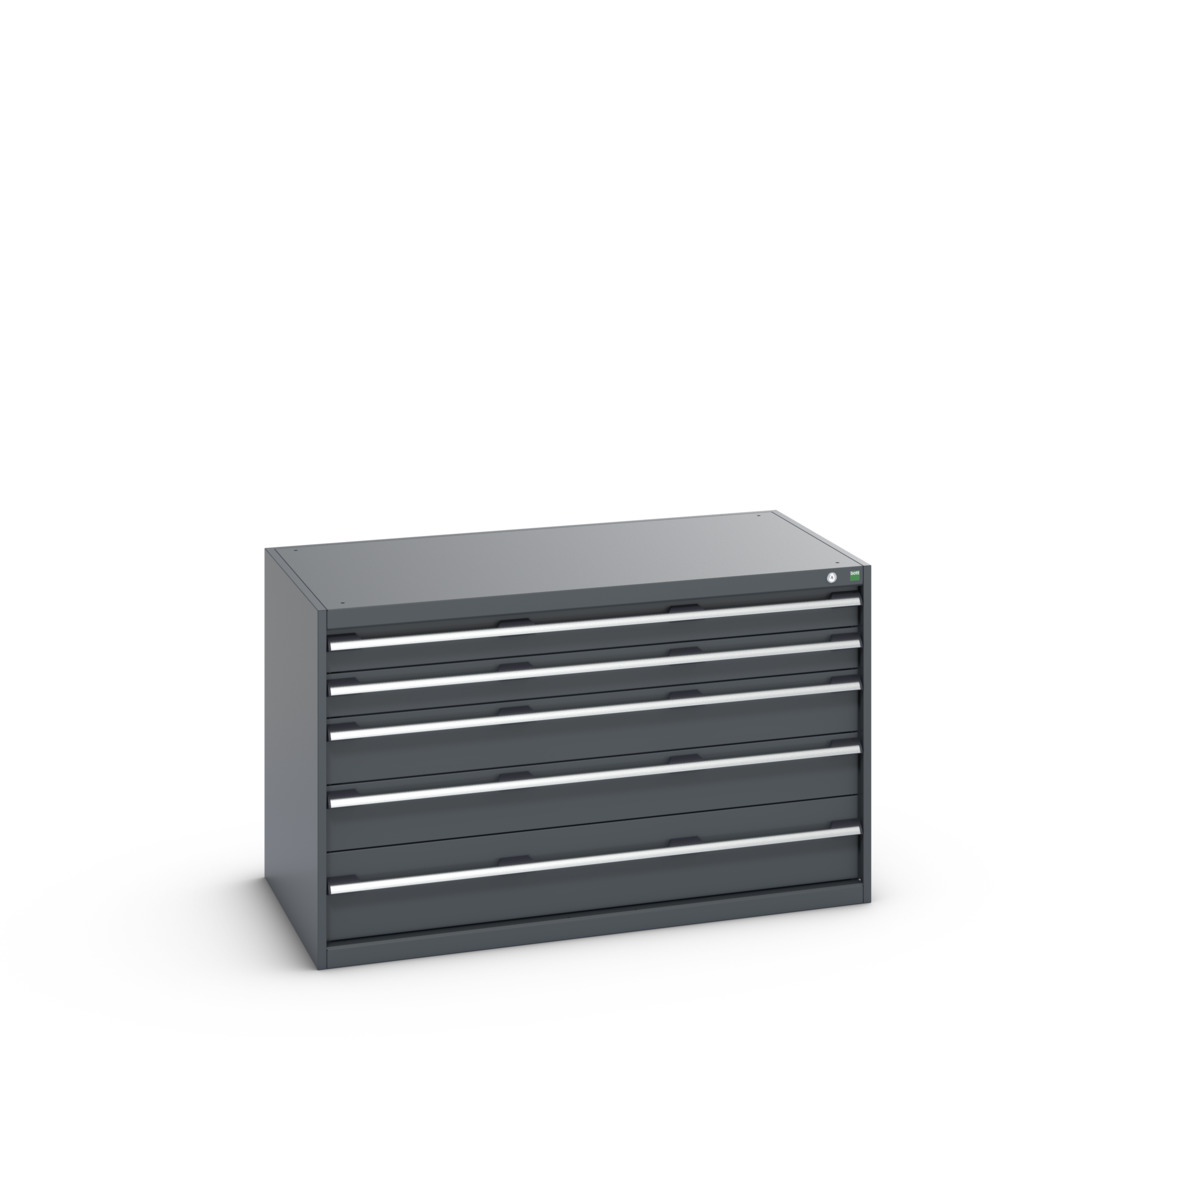 40030007.77V - cubio drawer cabinet